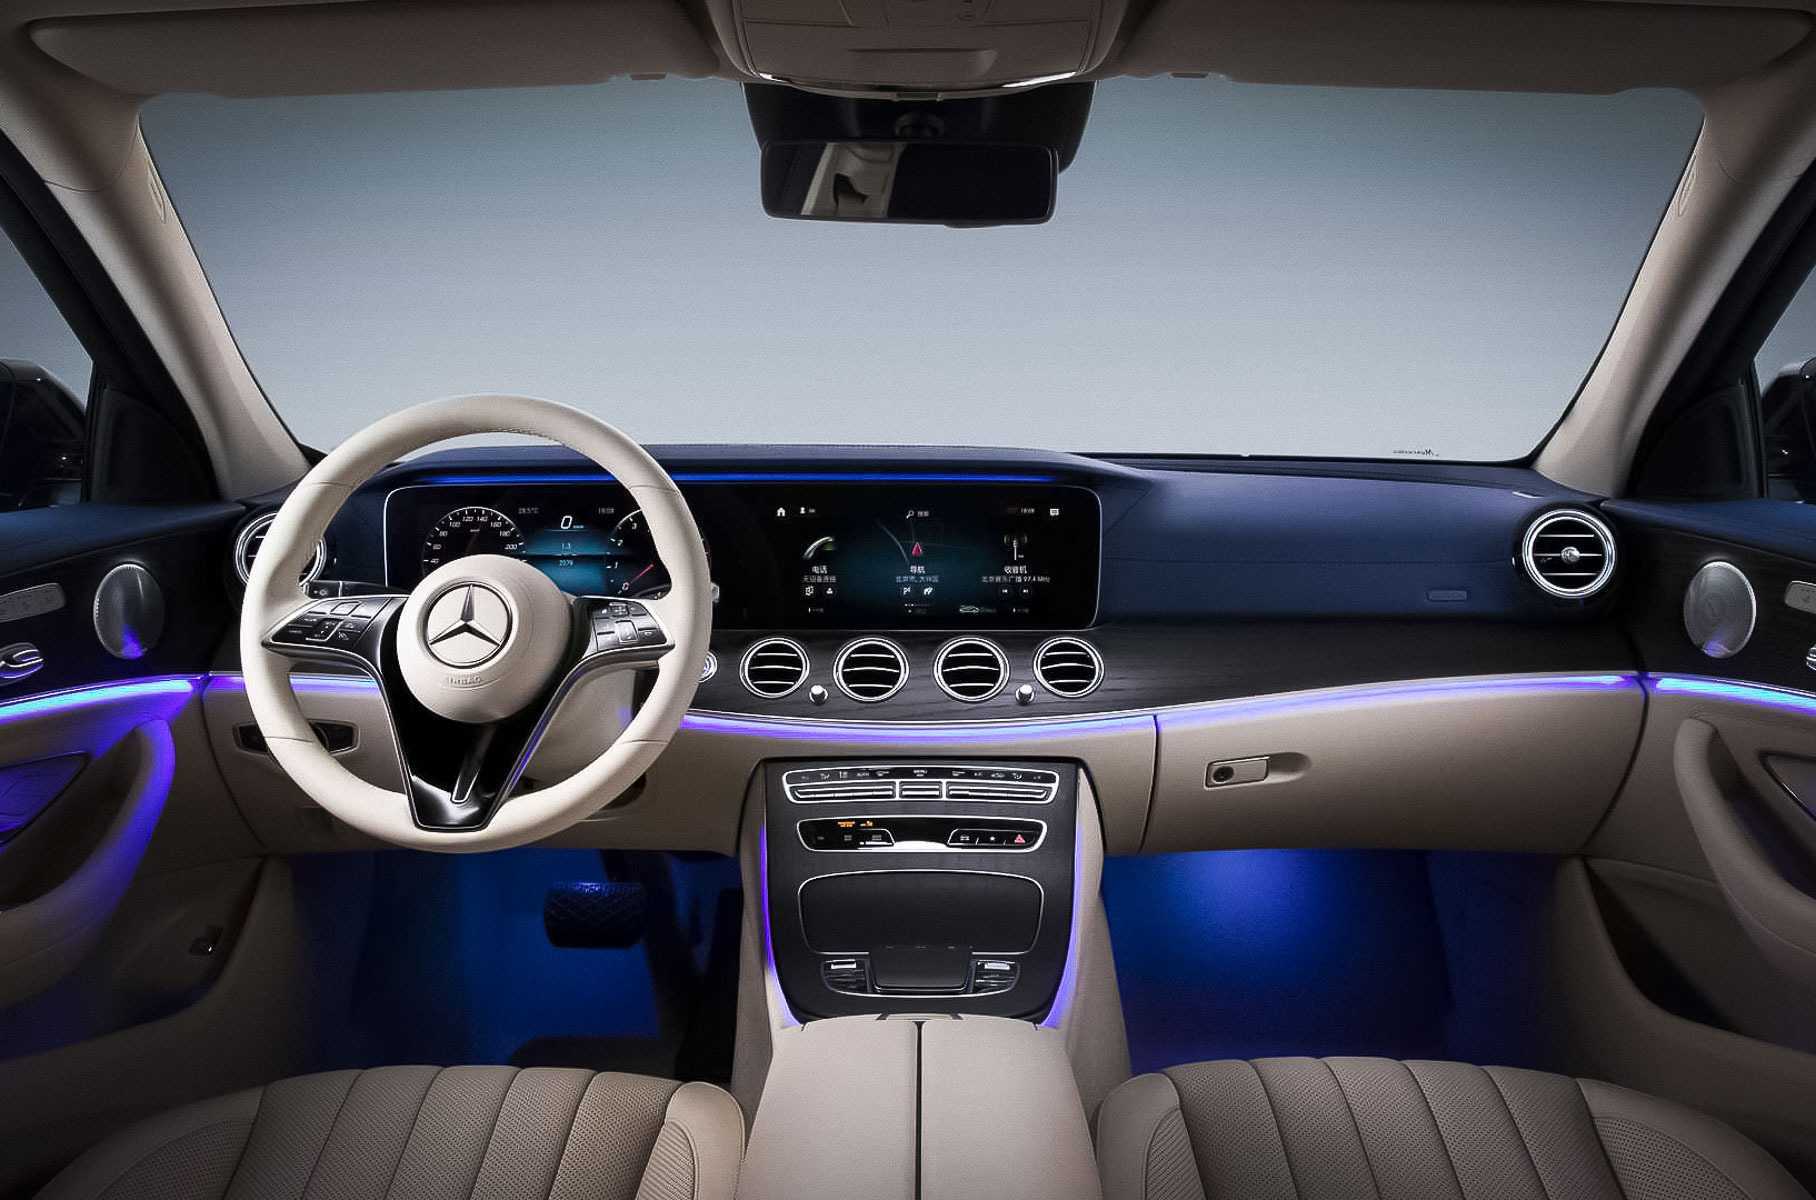 Mercedes-benz показал рестайлинговый e-class 2021 модельного года